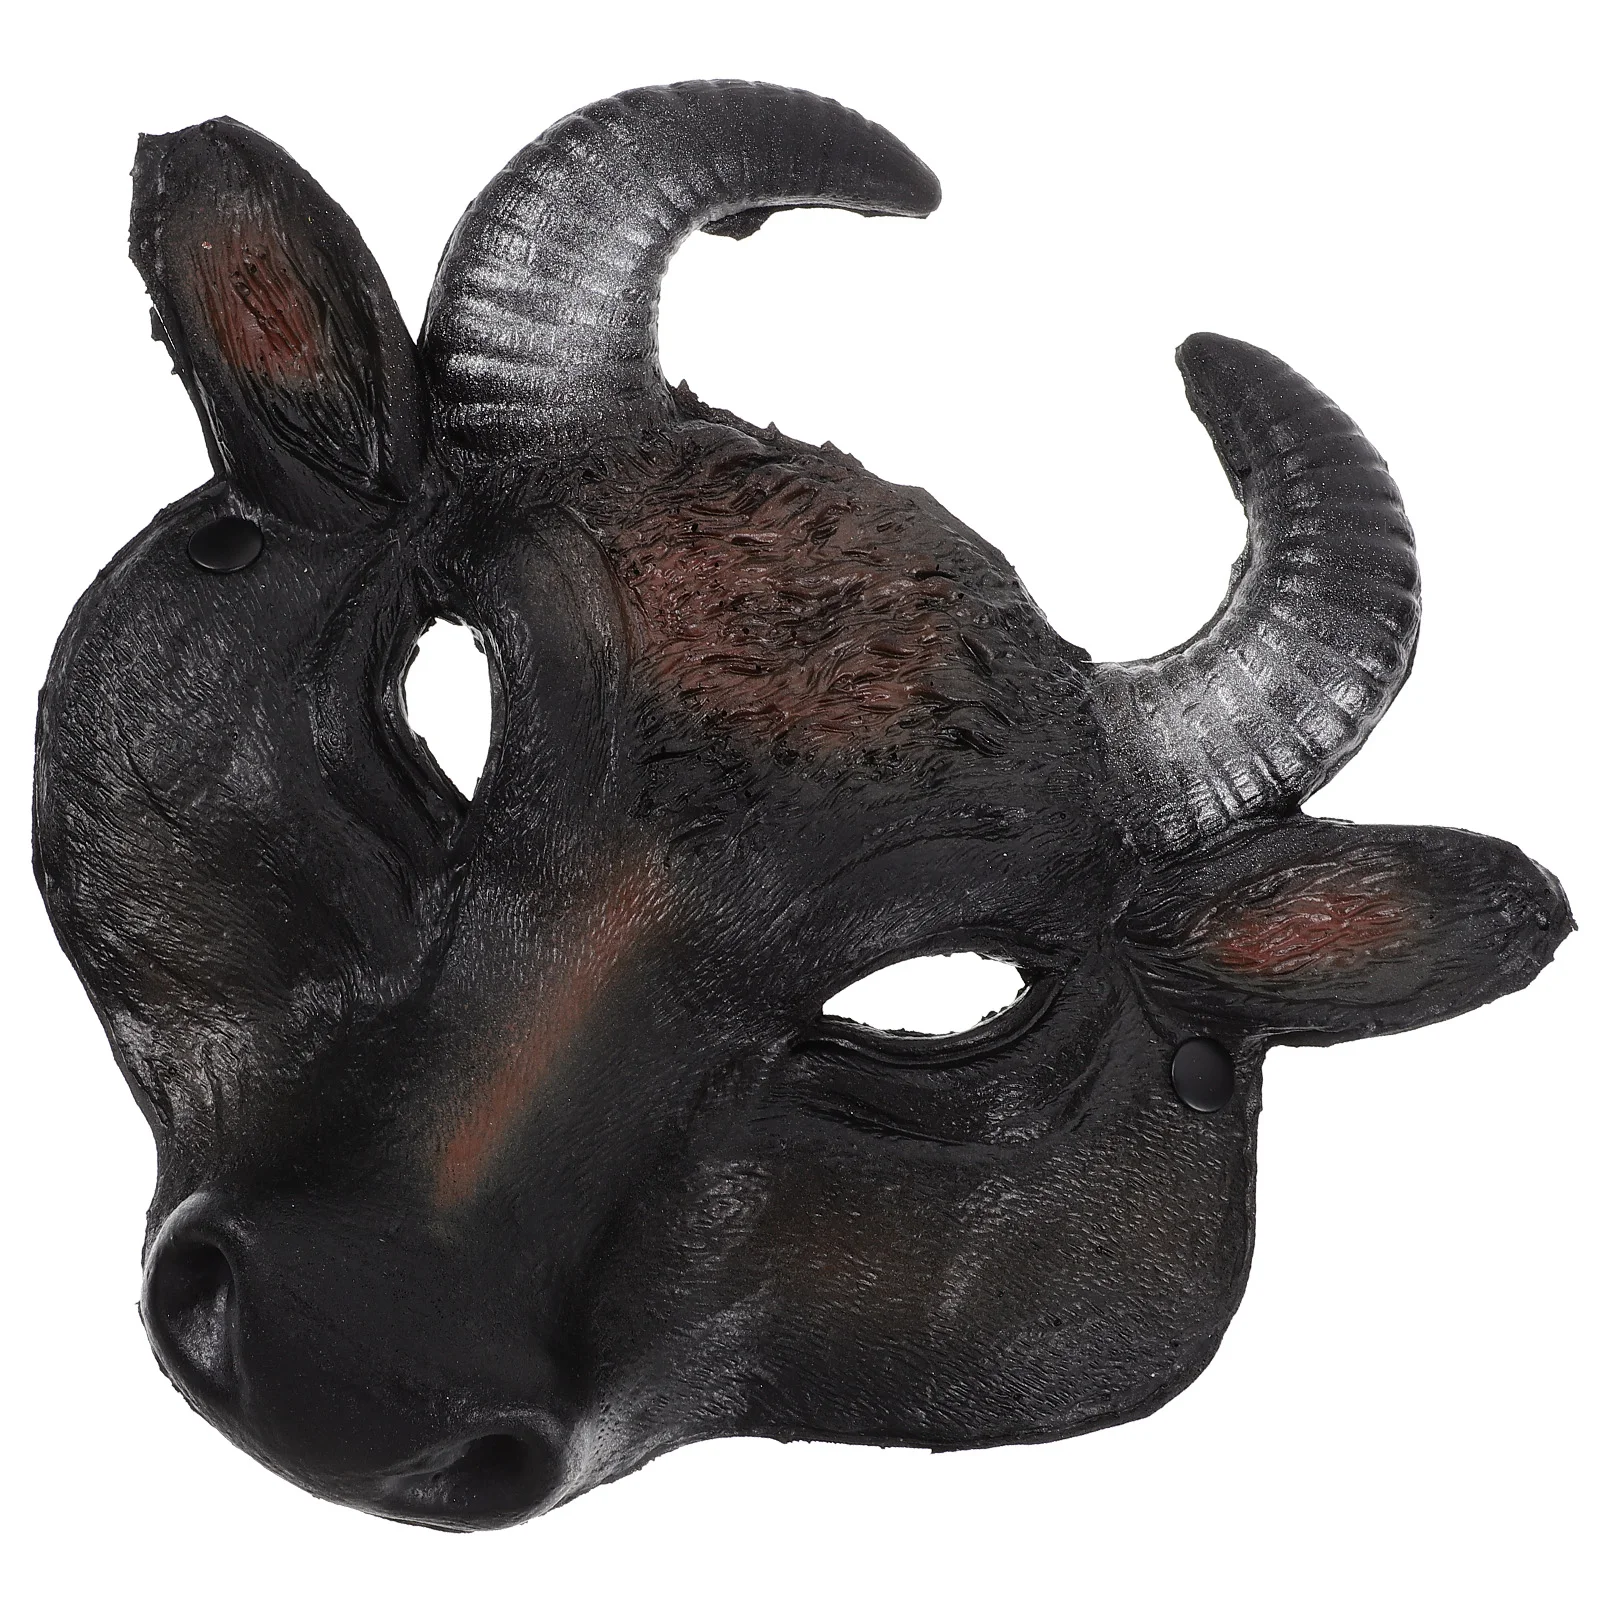 

Маска Дьявола быка на Хэллоуин, маска коровы, демона, маска для косплея животных, маска на все лицо, костюм монстра, реквизит, аксессуары для ролевых игр